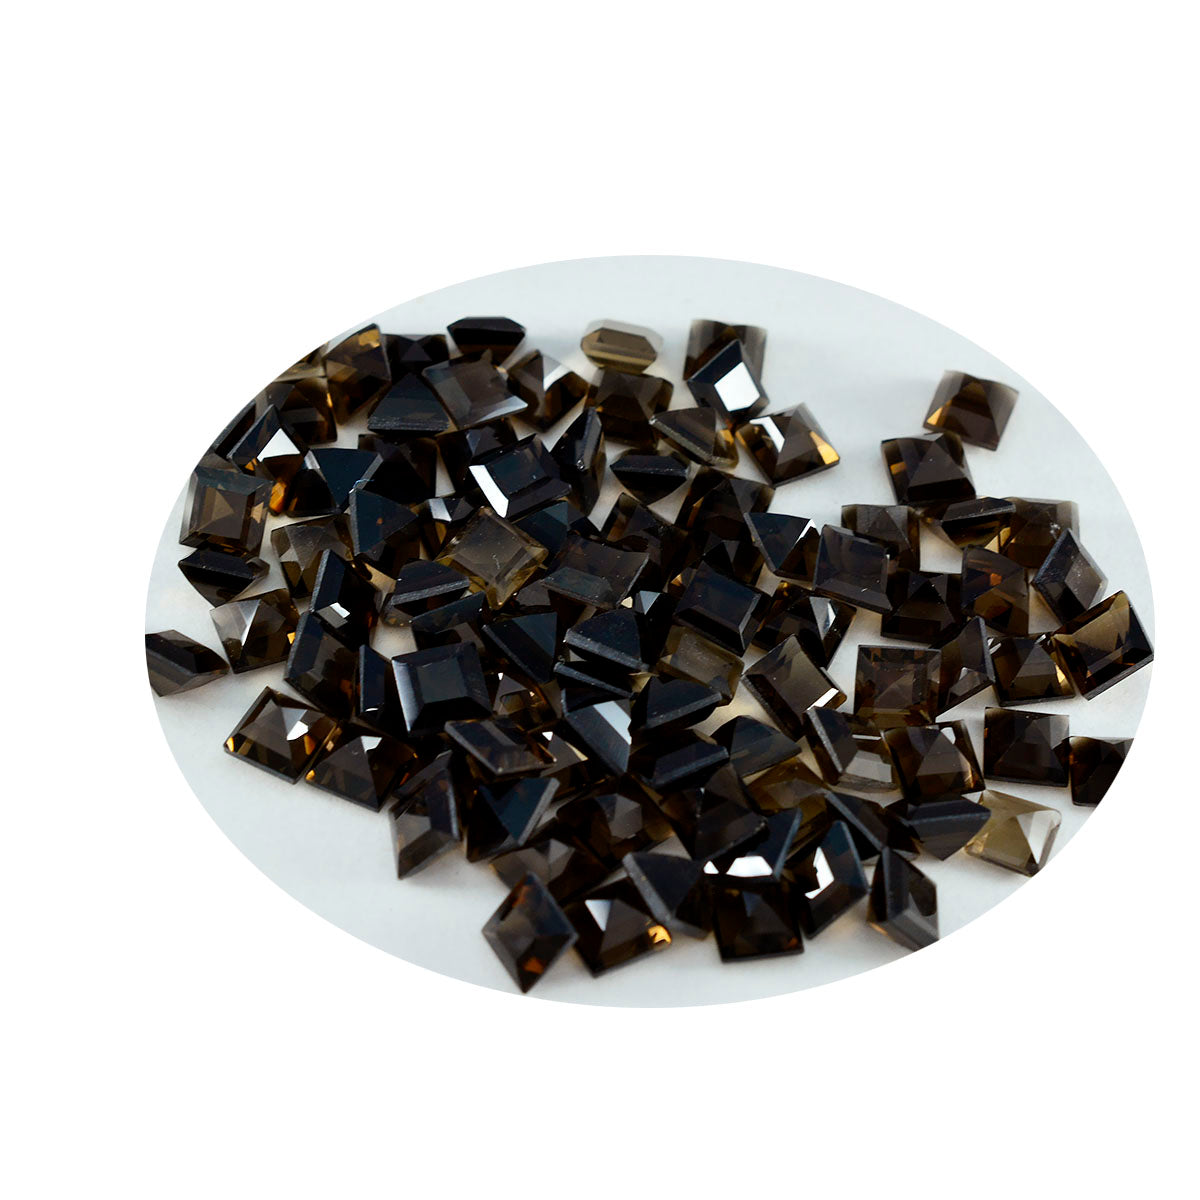 riyogems 1 шт. натуральный коричневый дымчатый кварц ограненный 6x6 мм квадратной формы фантастическое качество свободный драгоценный камень